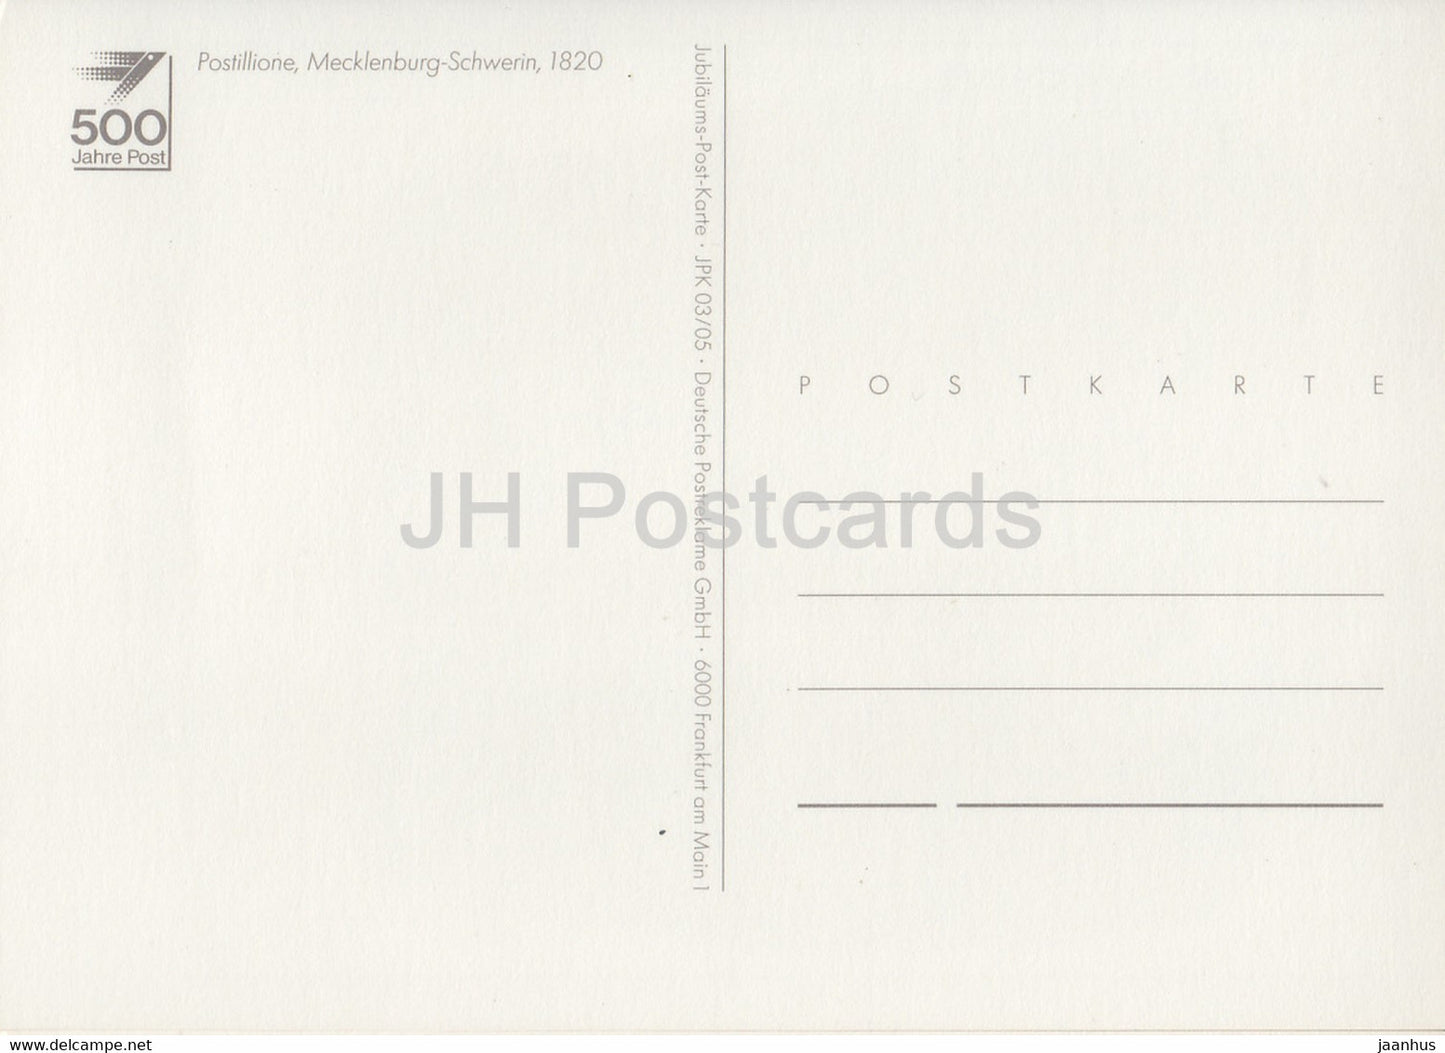 Postillione - Mecklenburg Schwerin - Postboten - Postdienst - Deutschland - unbenutzt